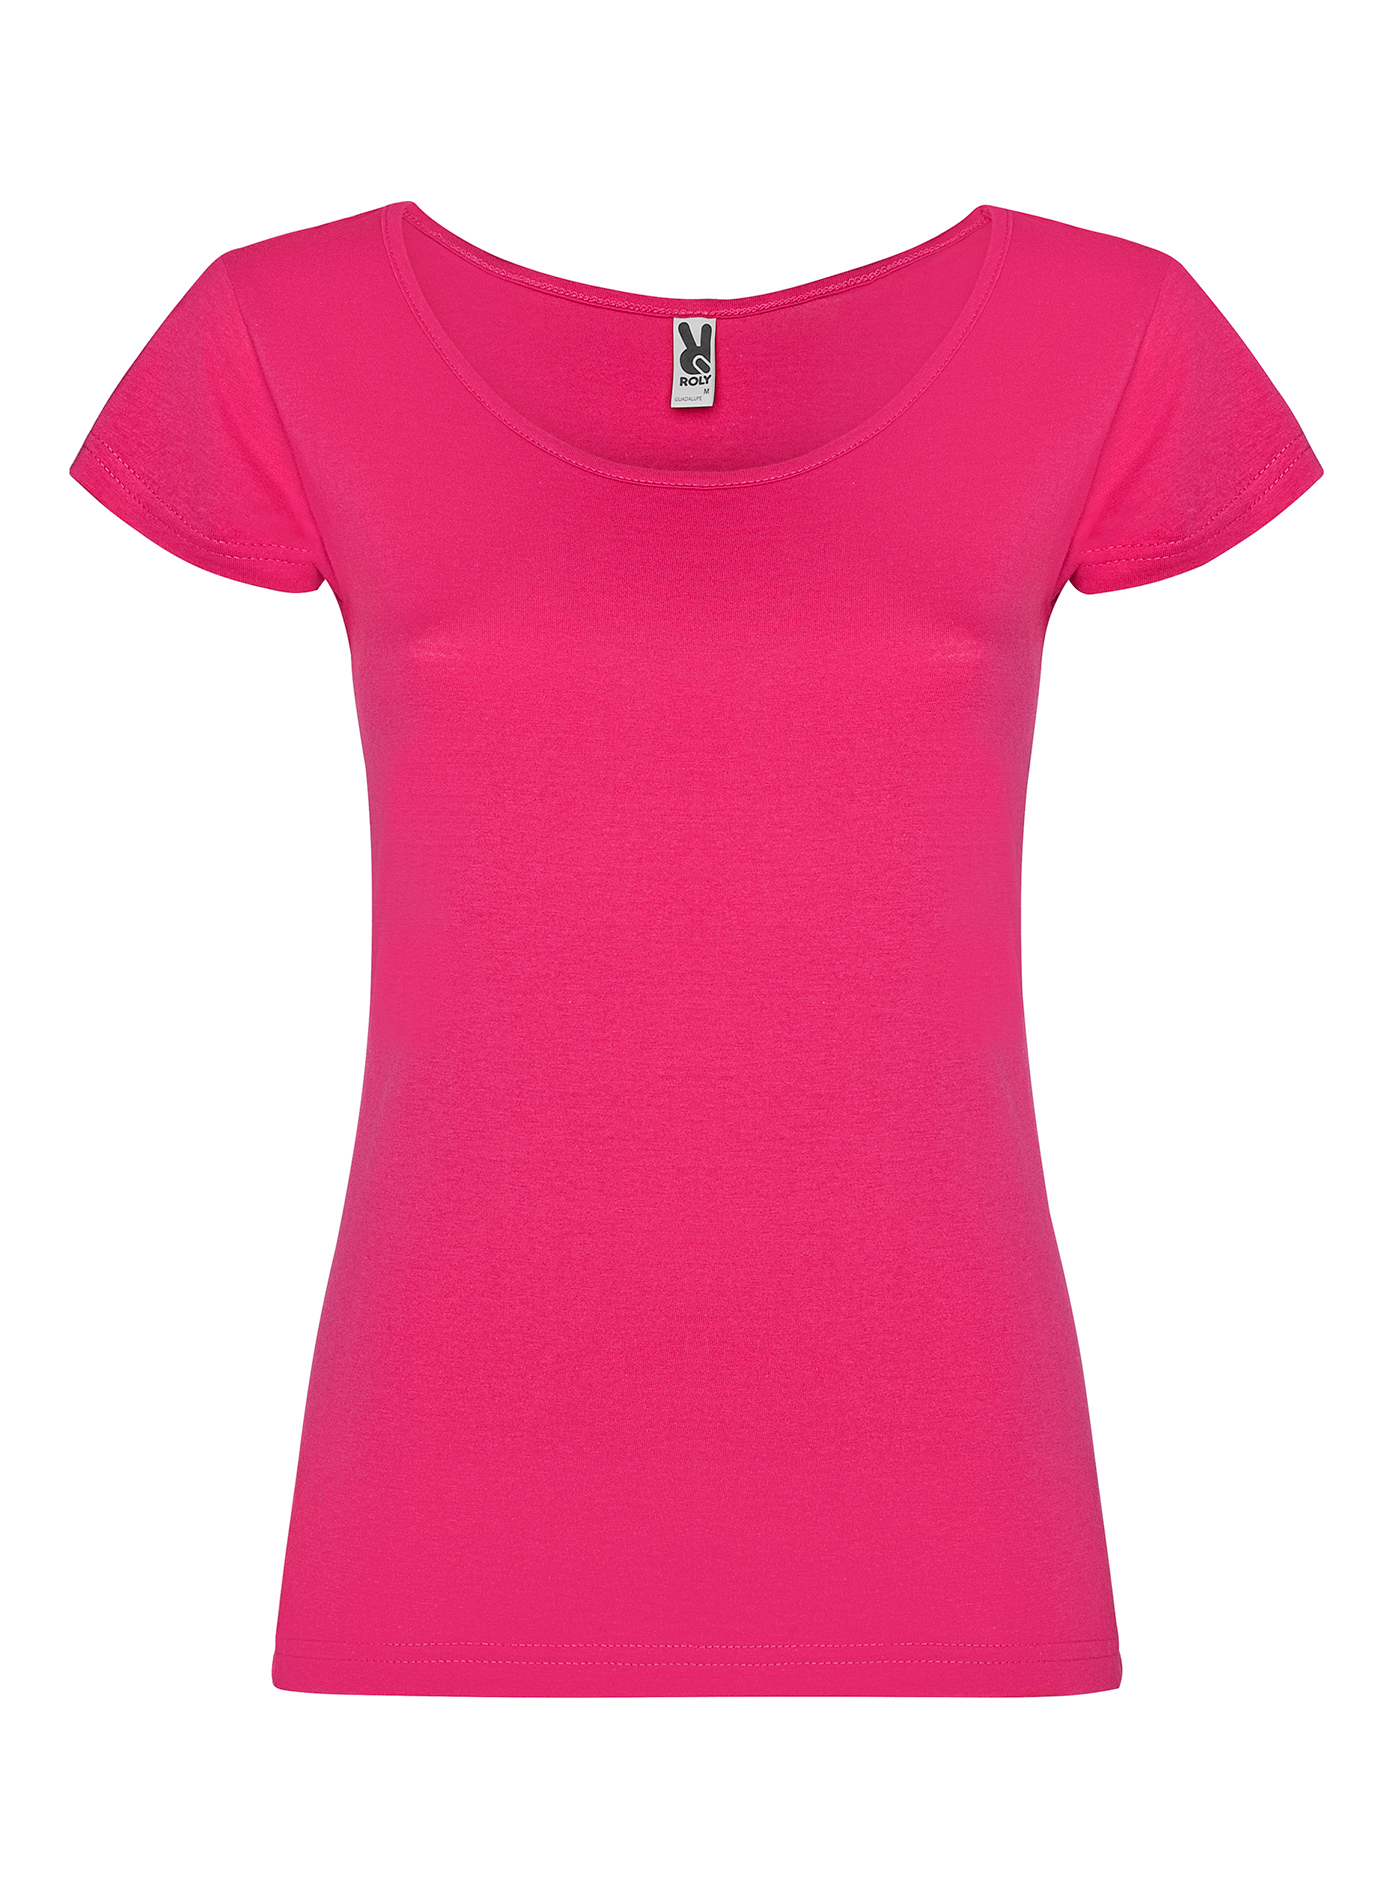 Dámské tričko Roly Guadalupe - Sytě růžová M